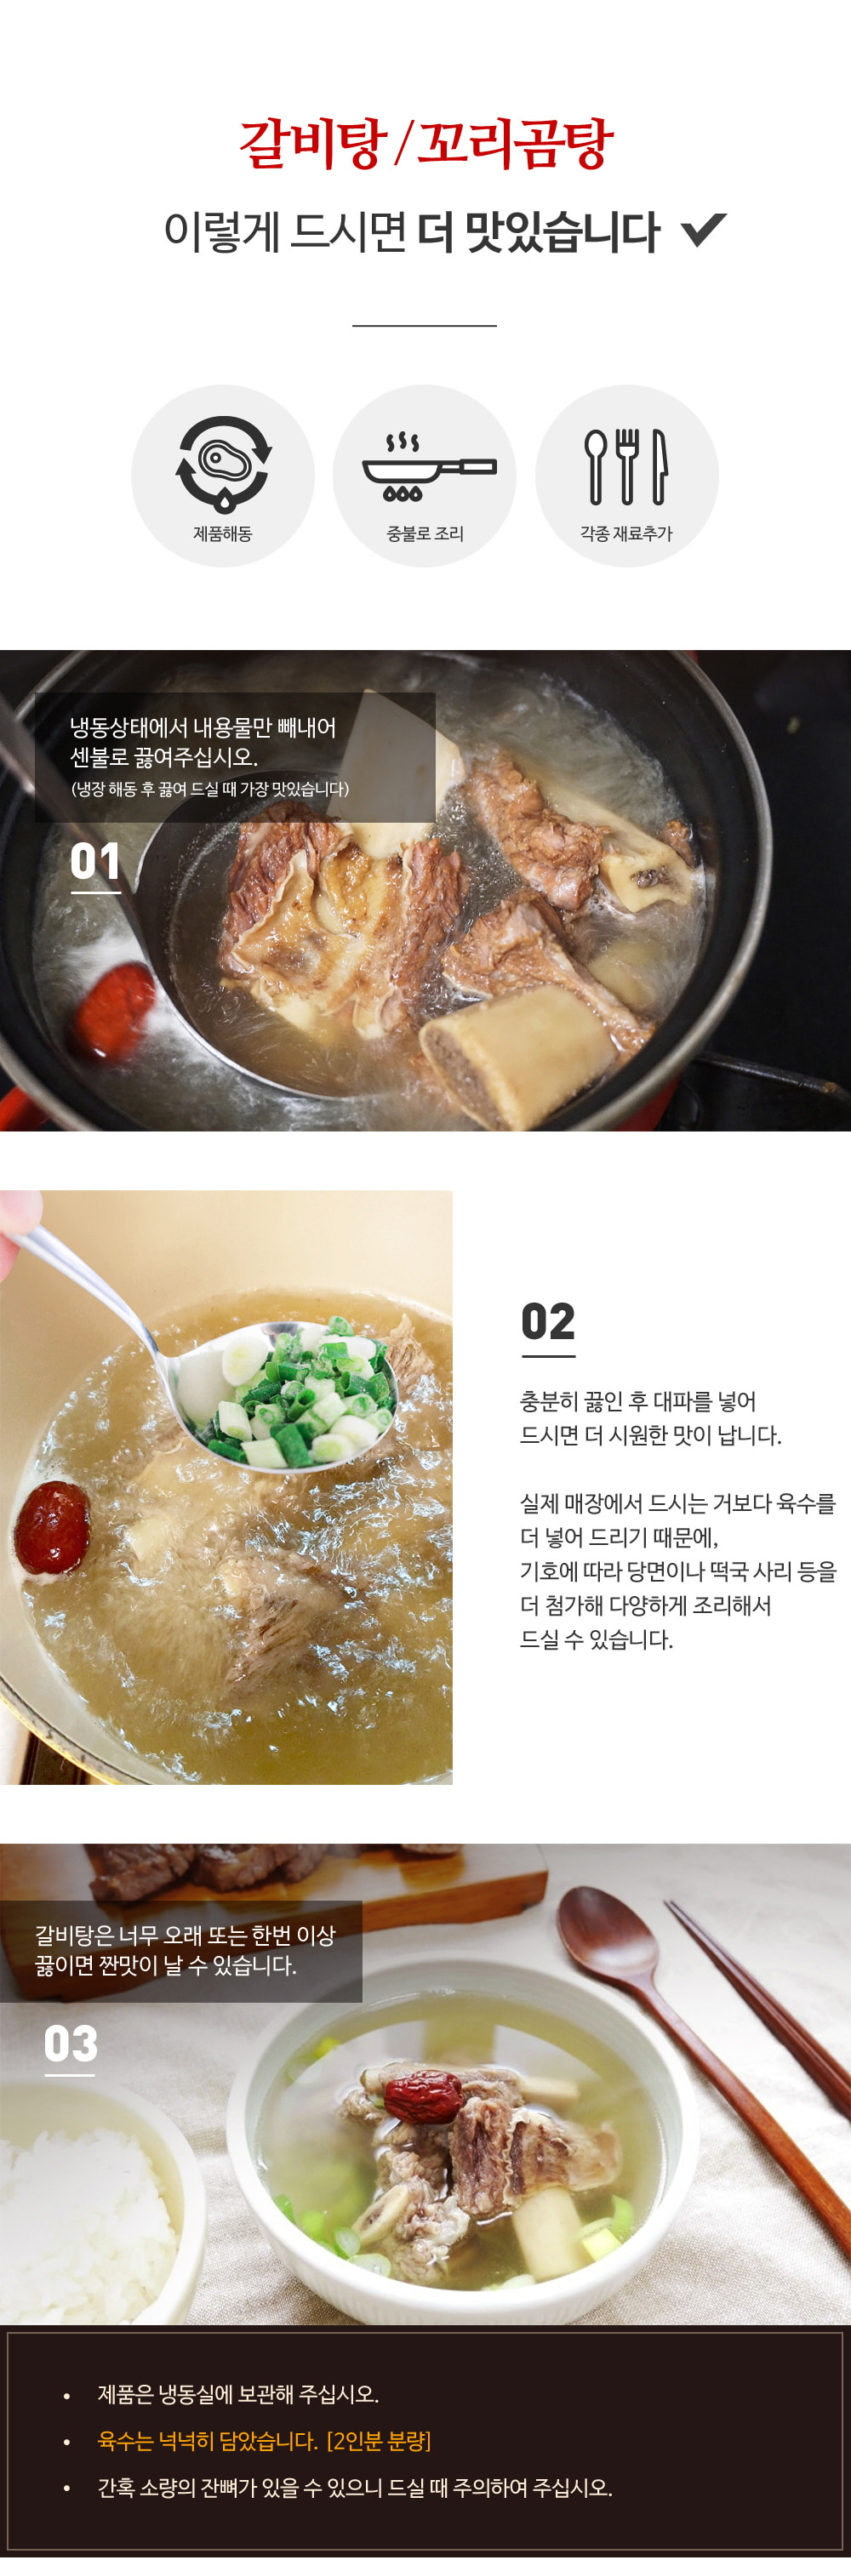 韓國食品-[사미헌] 갈비탕 1kg